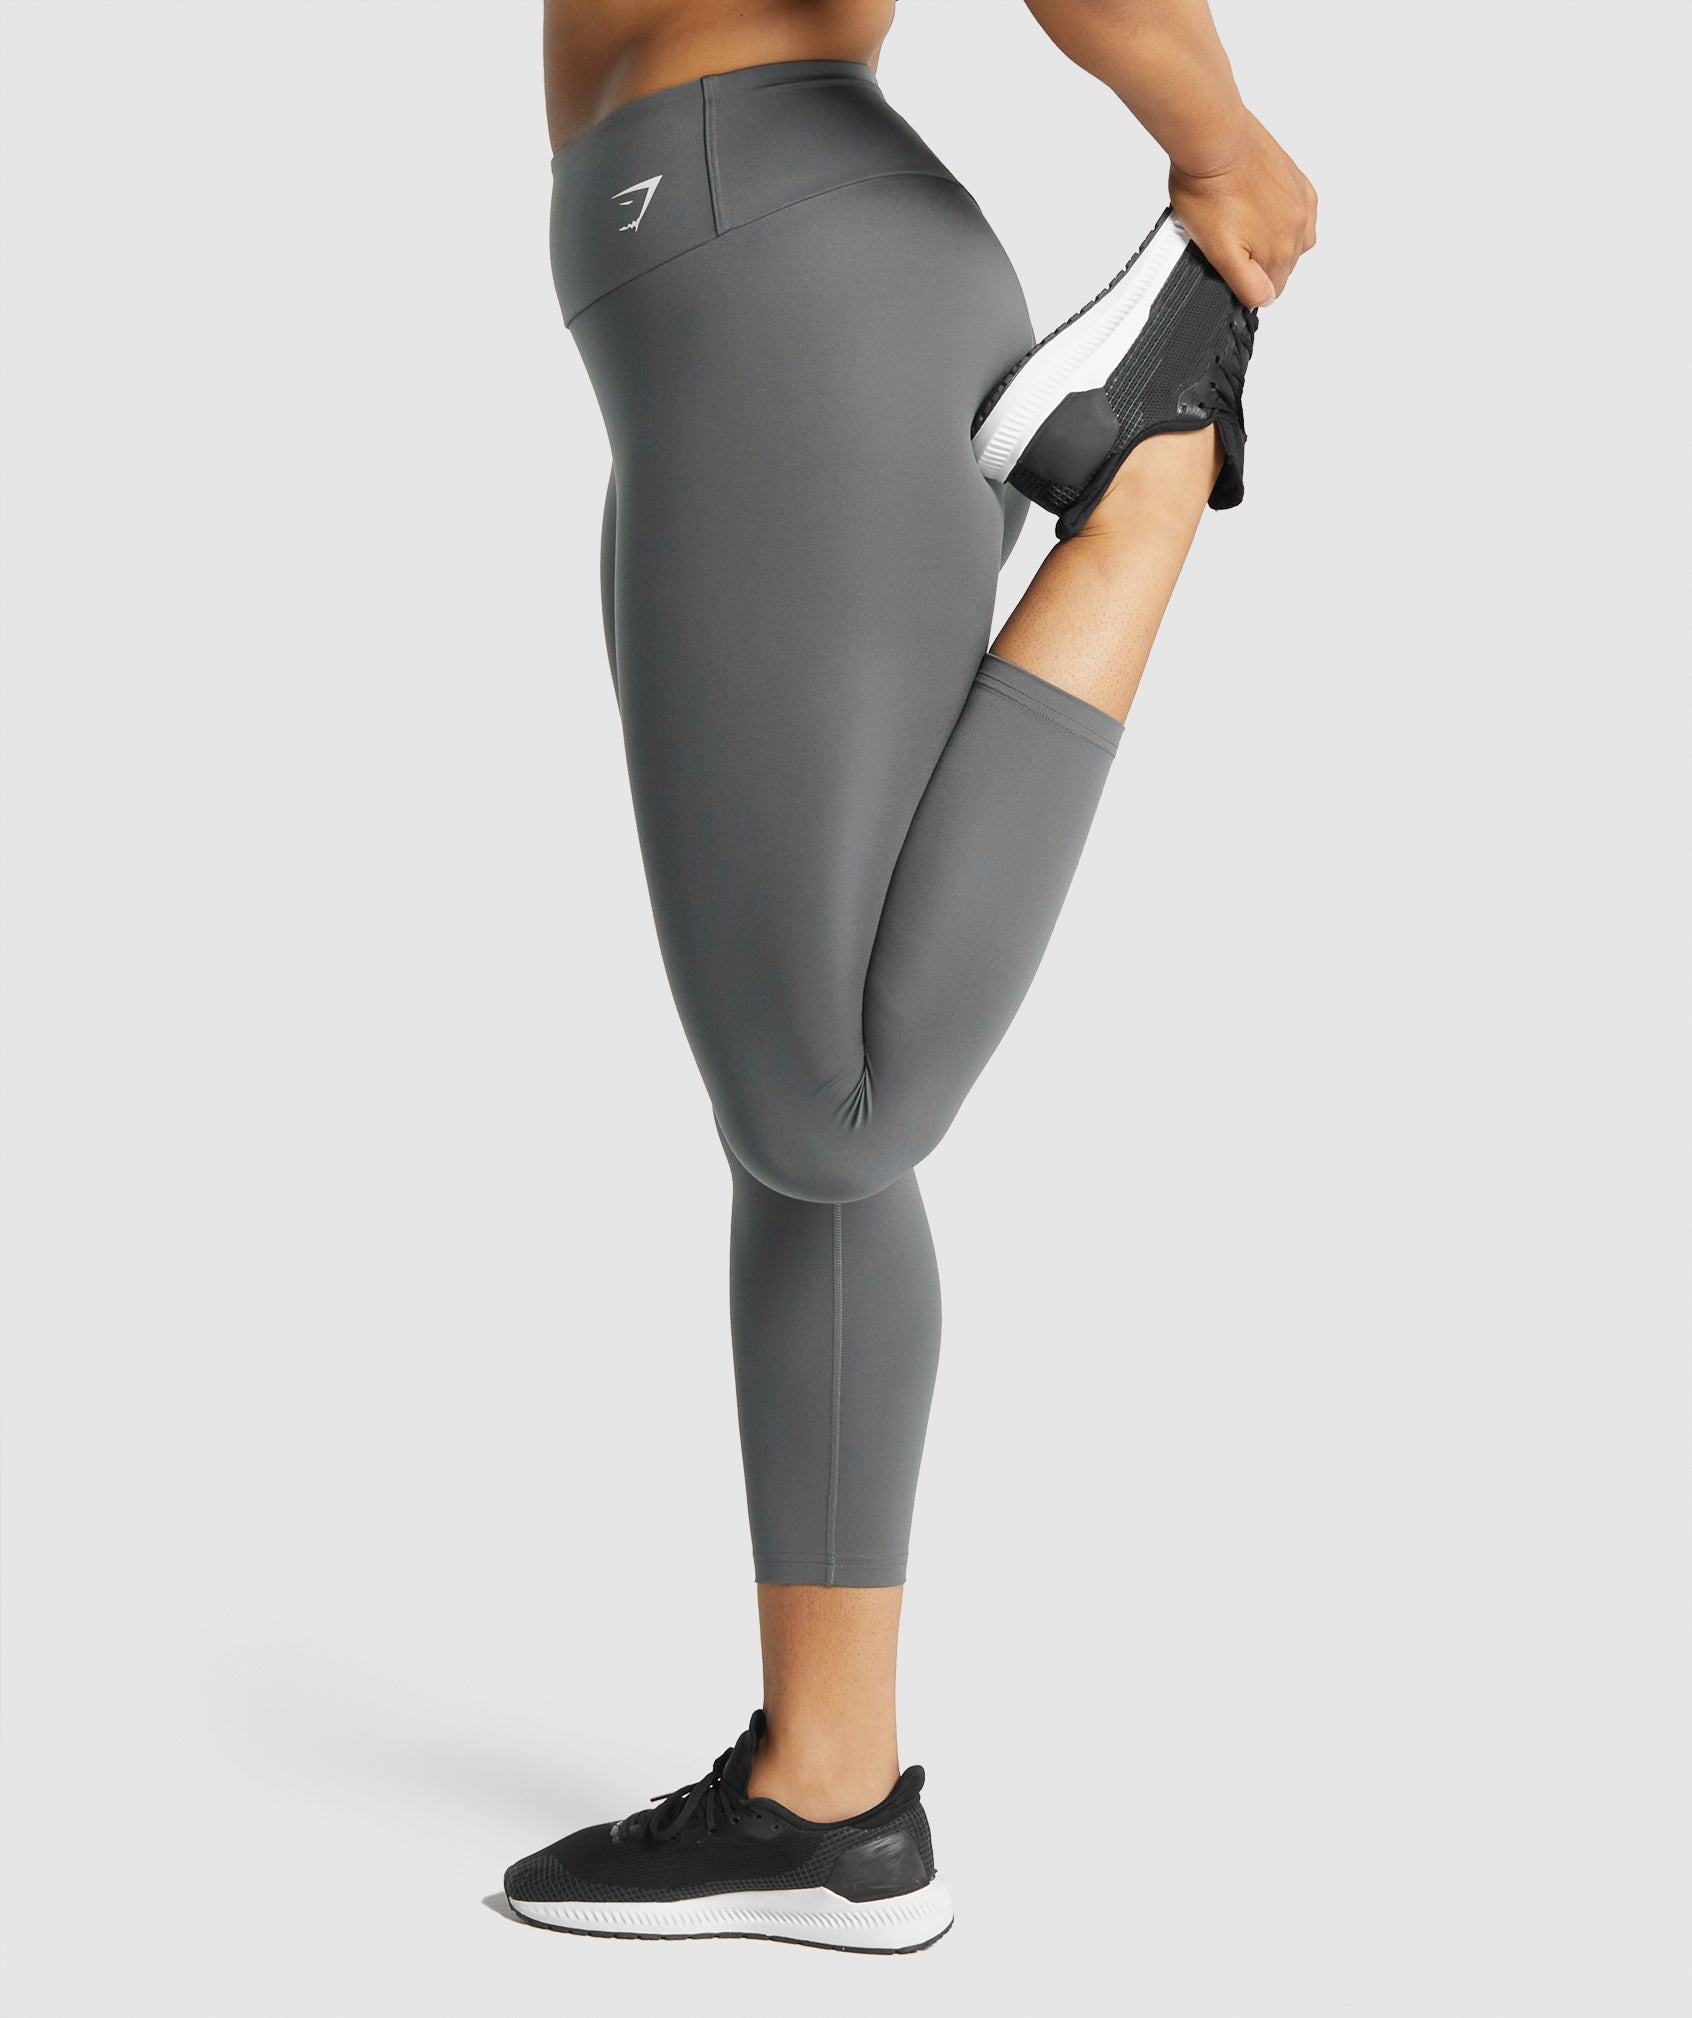 Gymshark Women's Speed 7/8 Running Gym Training Leggings Black RRP £40  S/M/L NEW